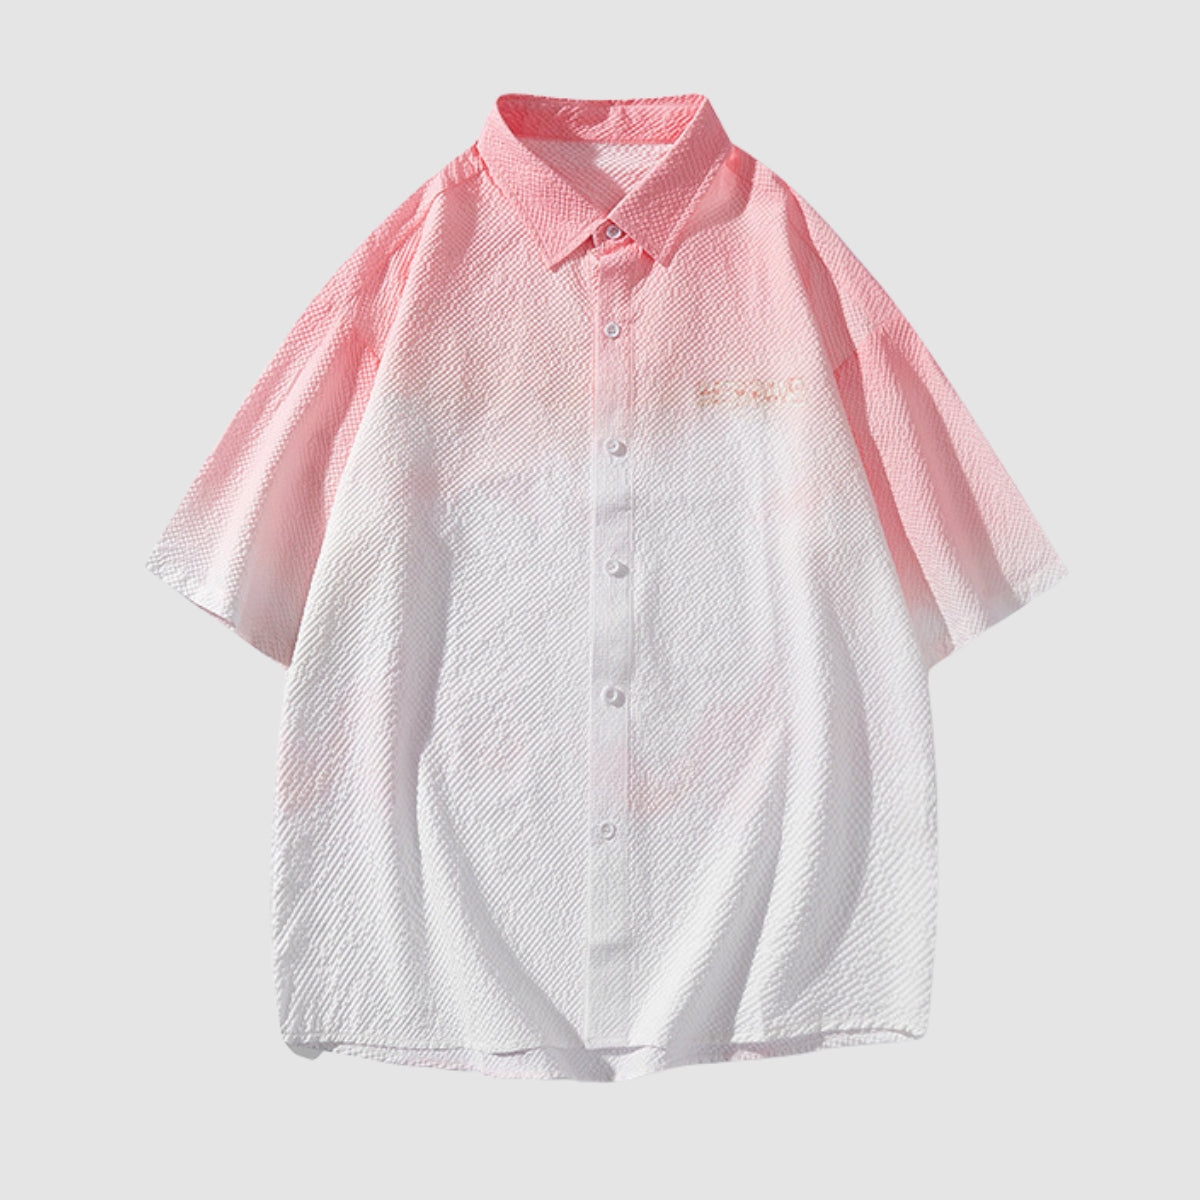 Gradient Dip-Dye Cotton Shirt